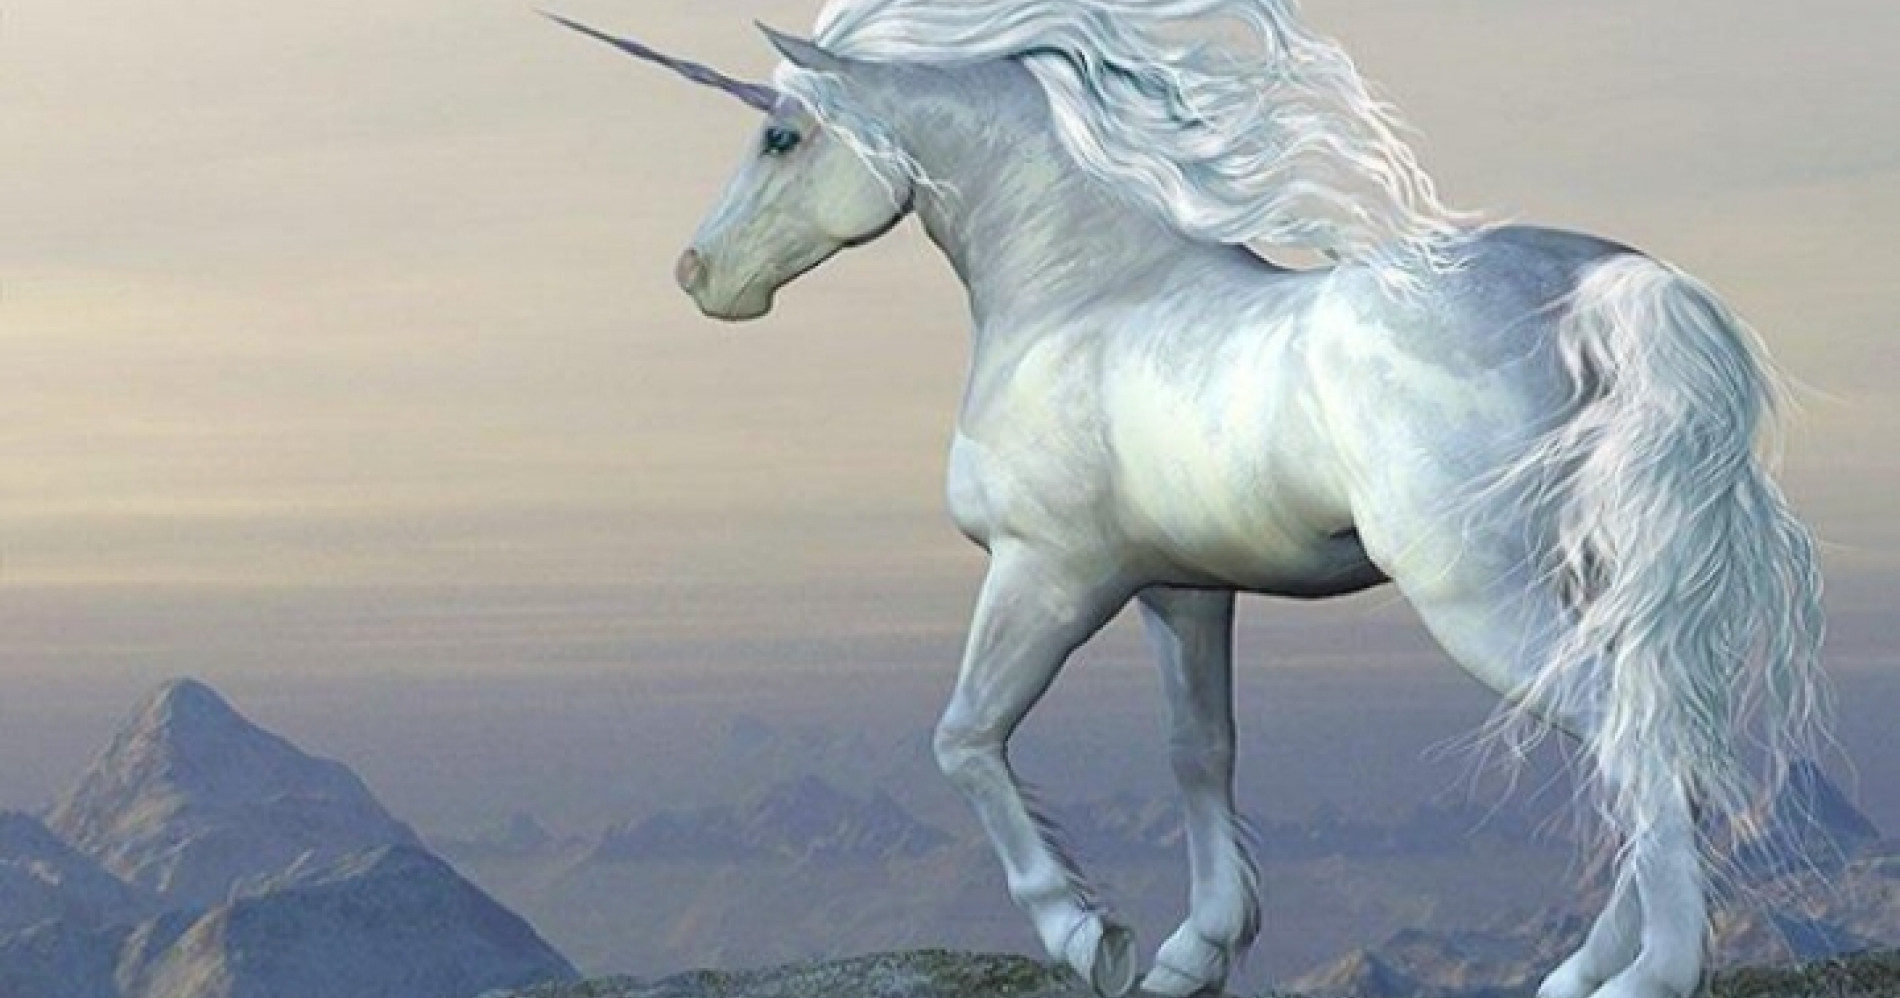 Unicorn - Mahluk Mitologis (sumber : Google)